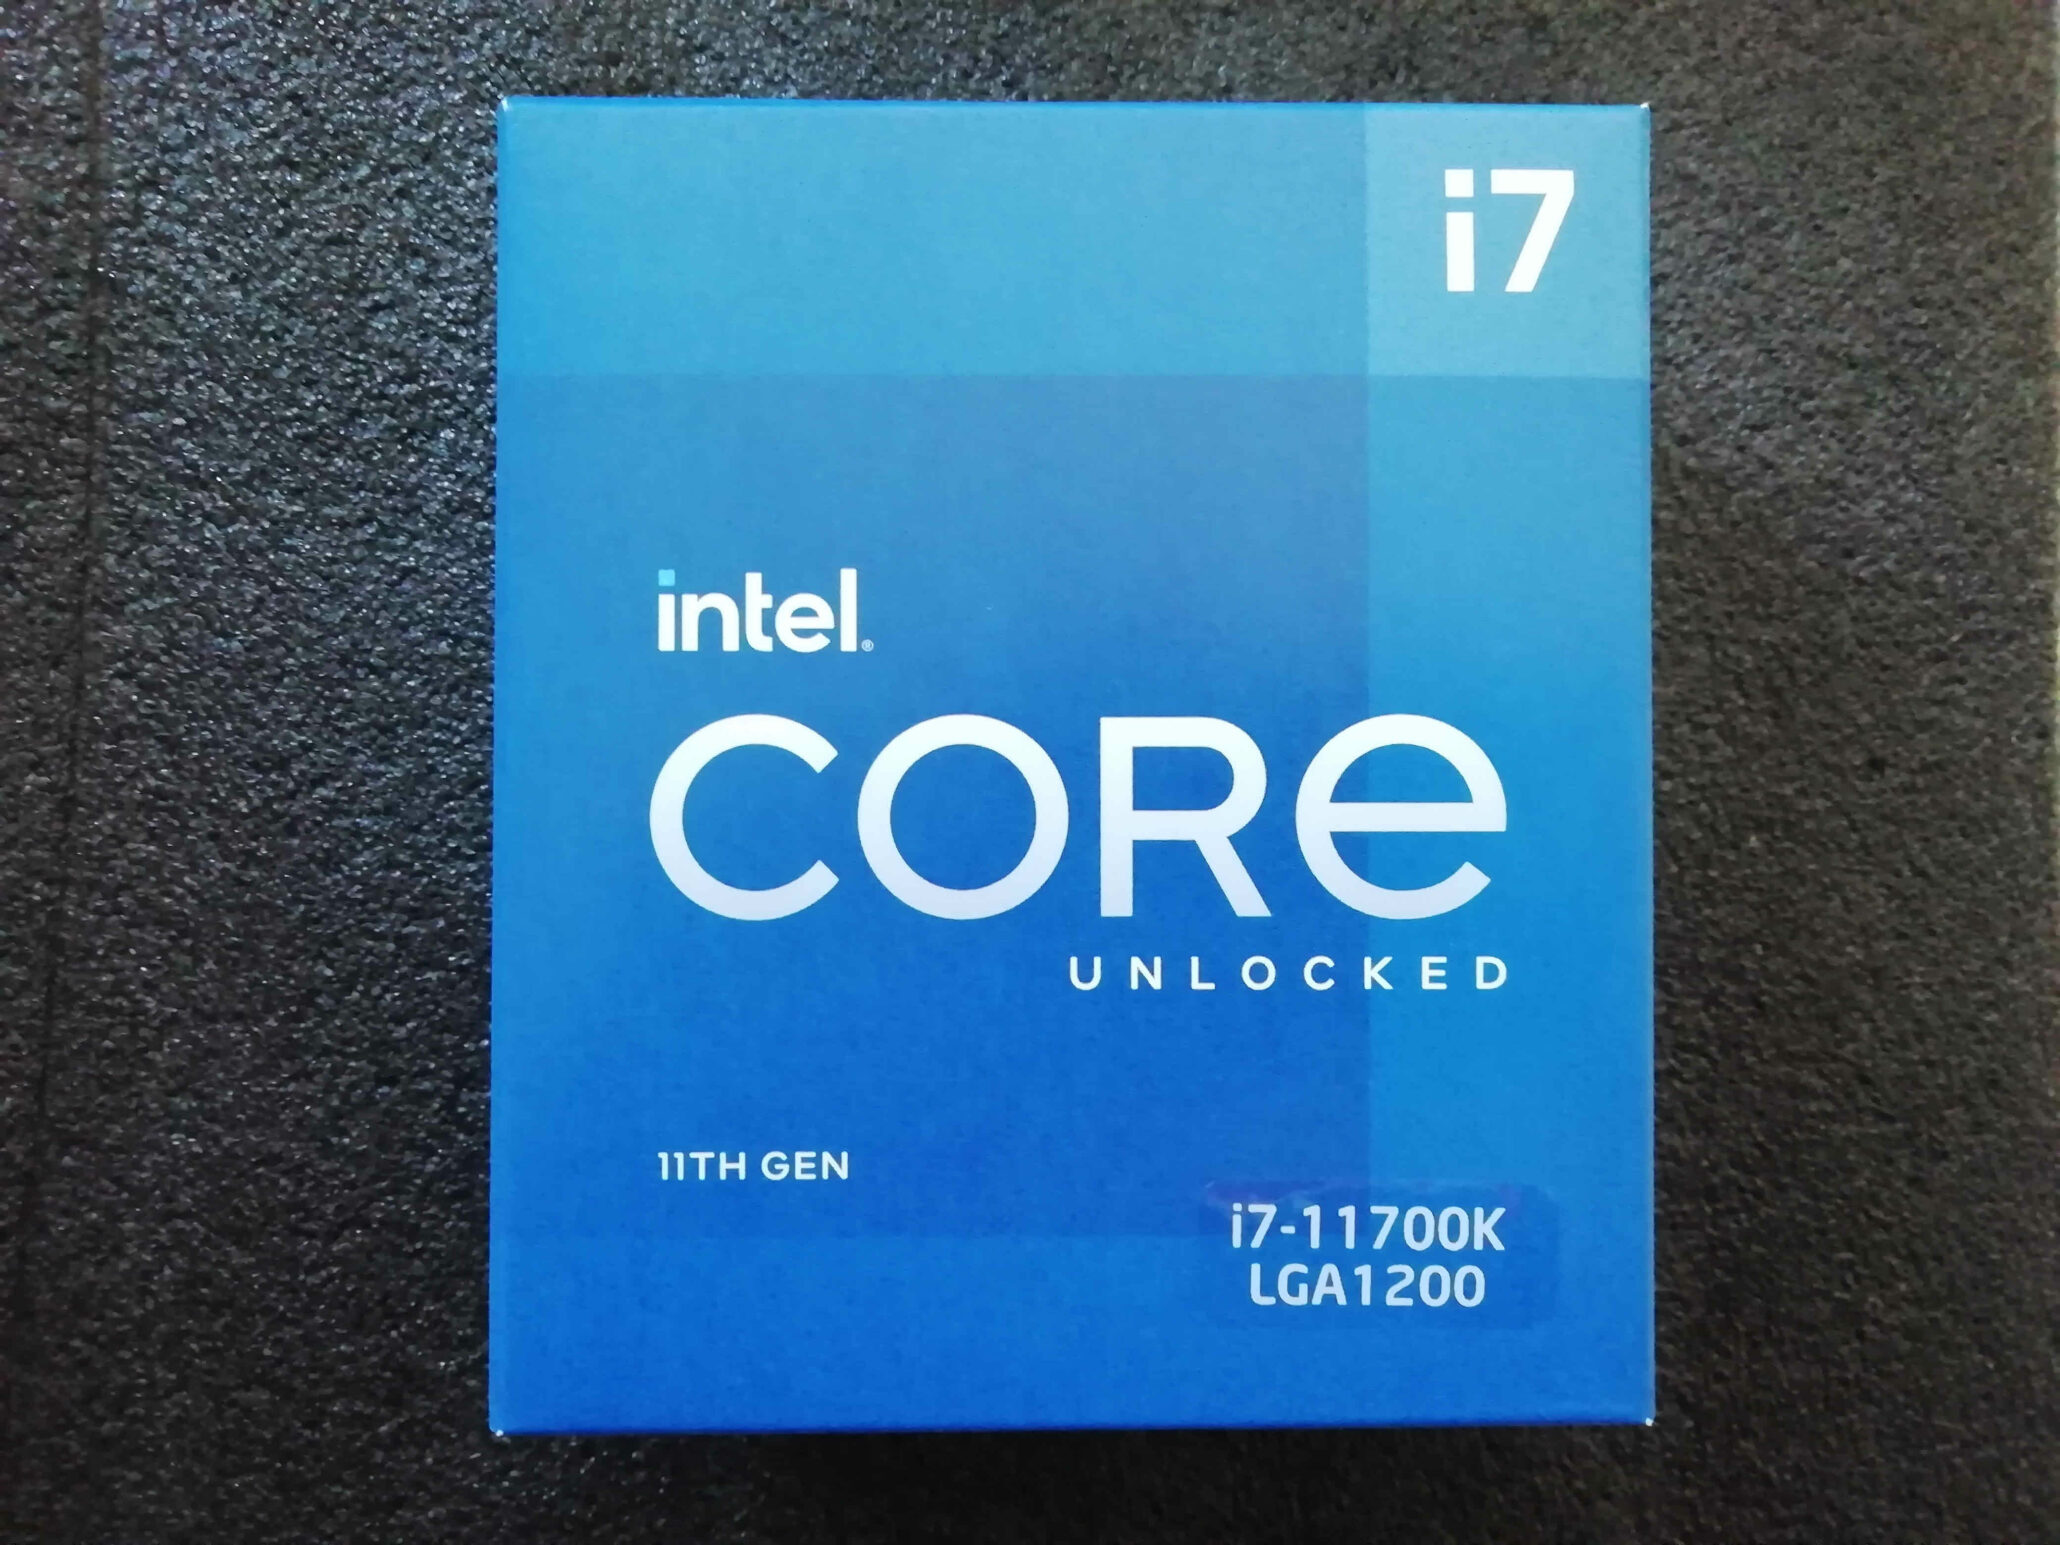 Intel core 11th